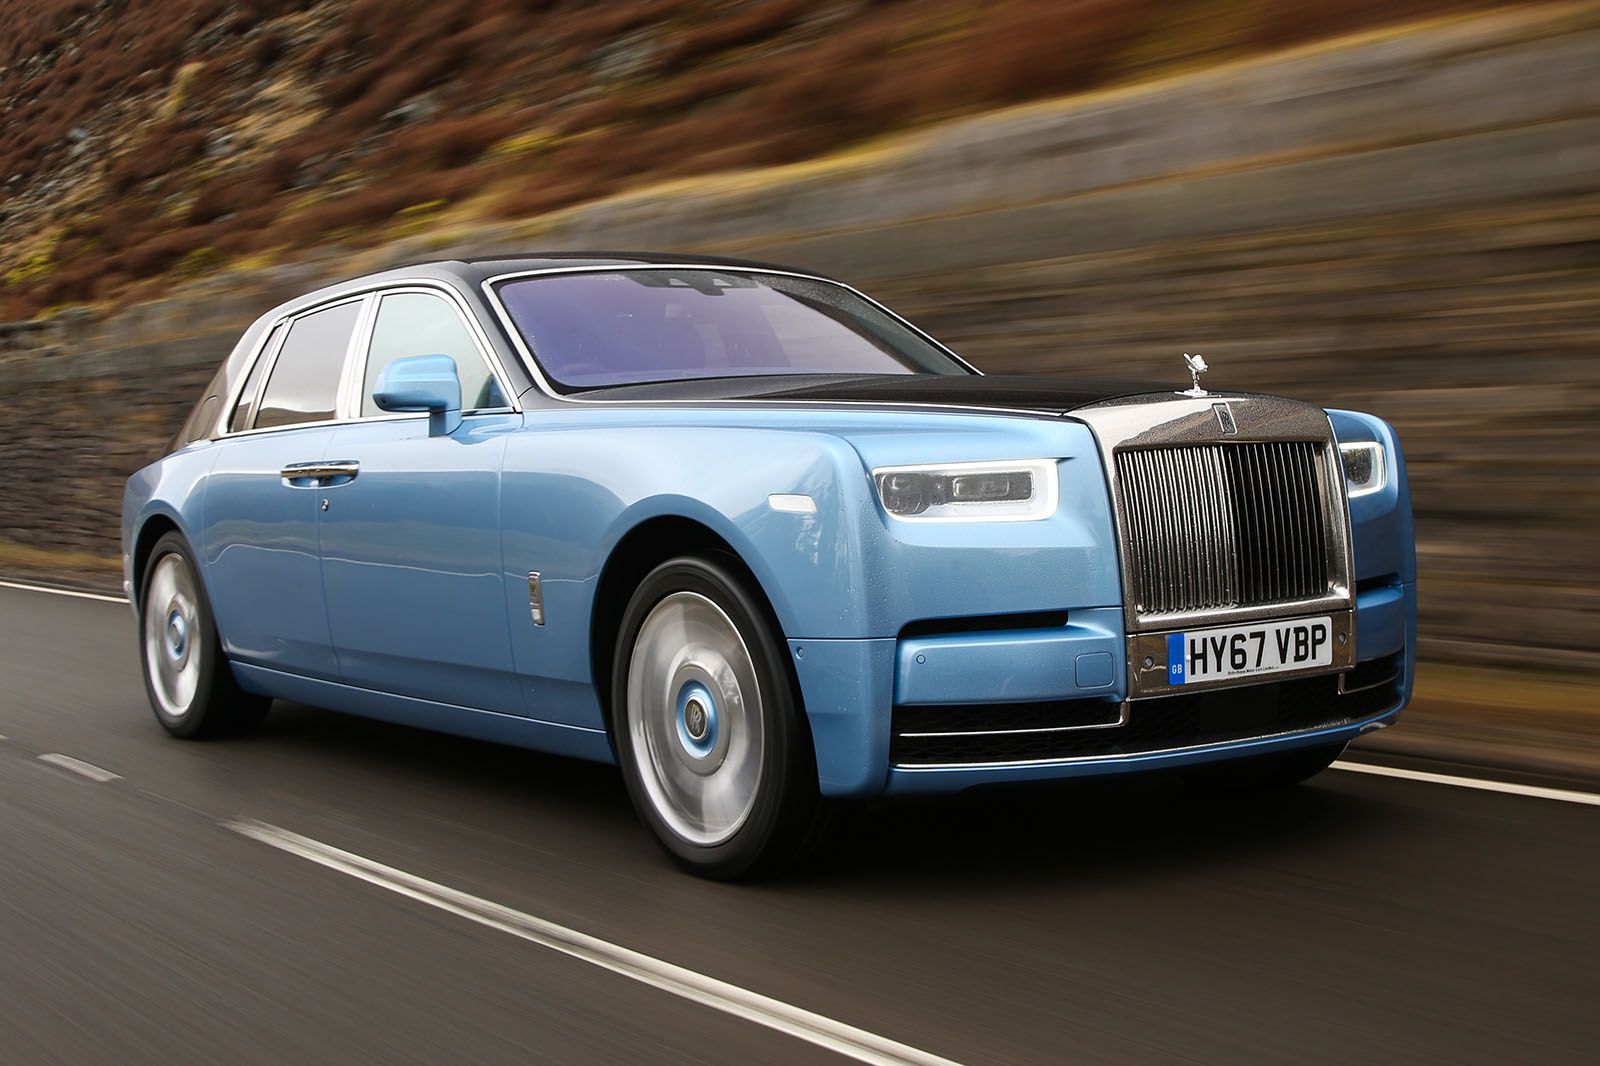 A blue 2016 Rolls Royce Phantom 